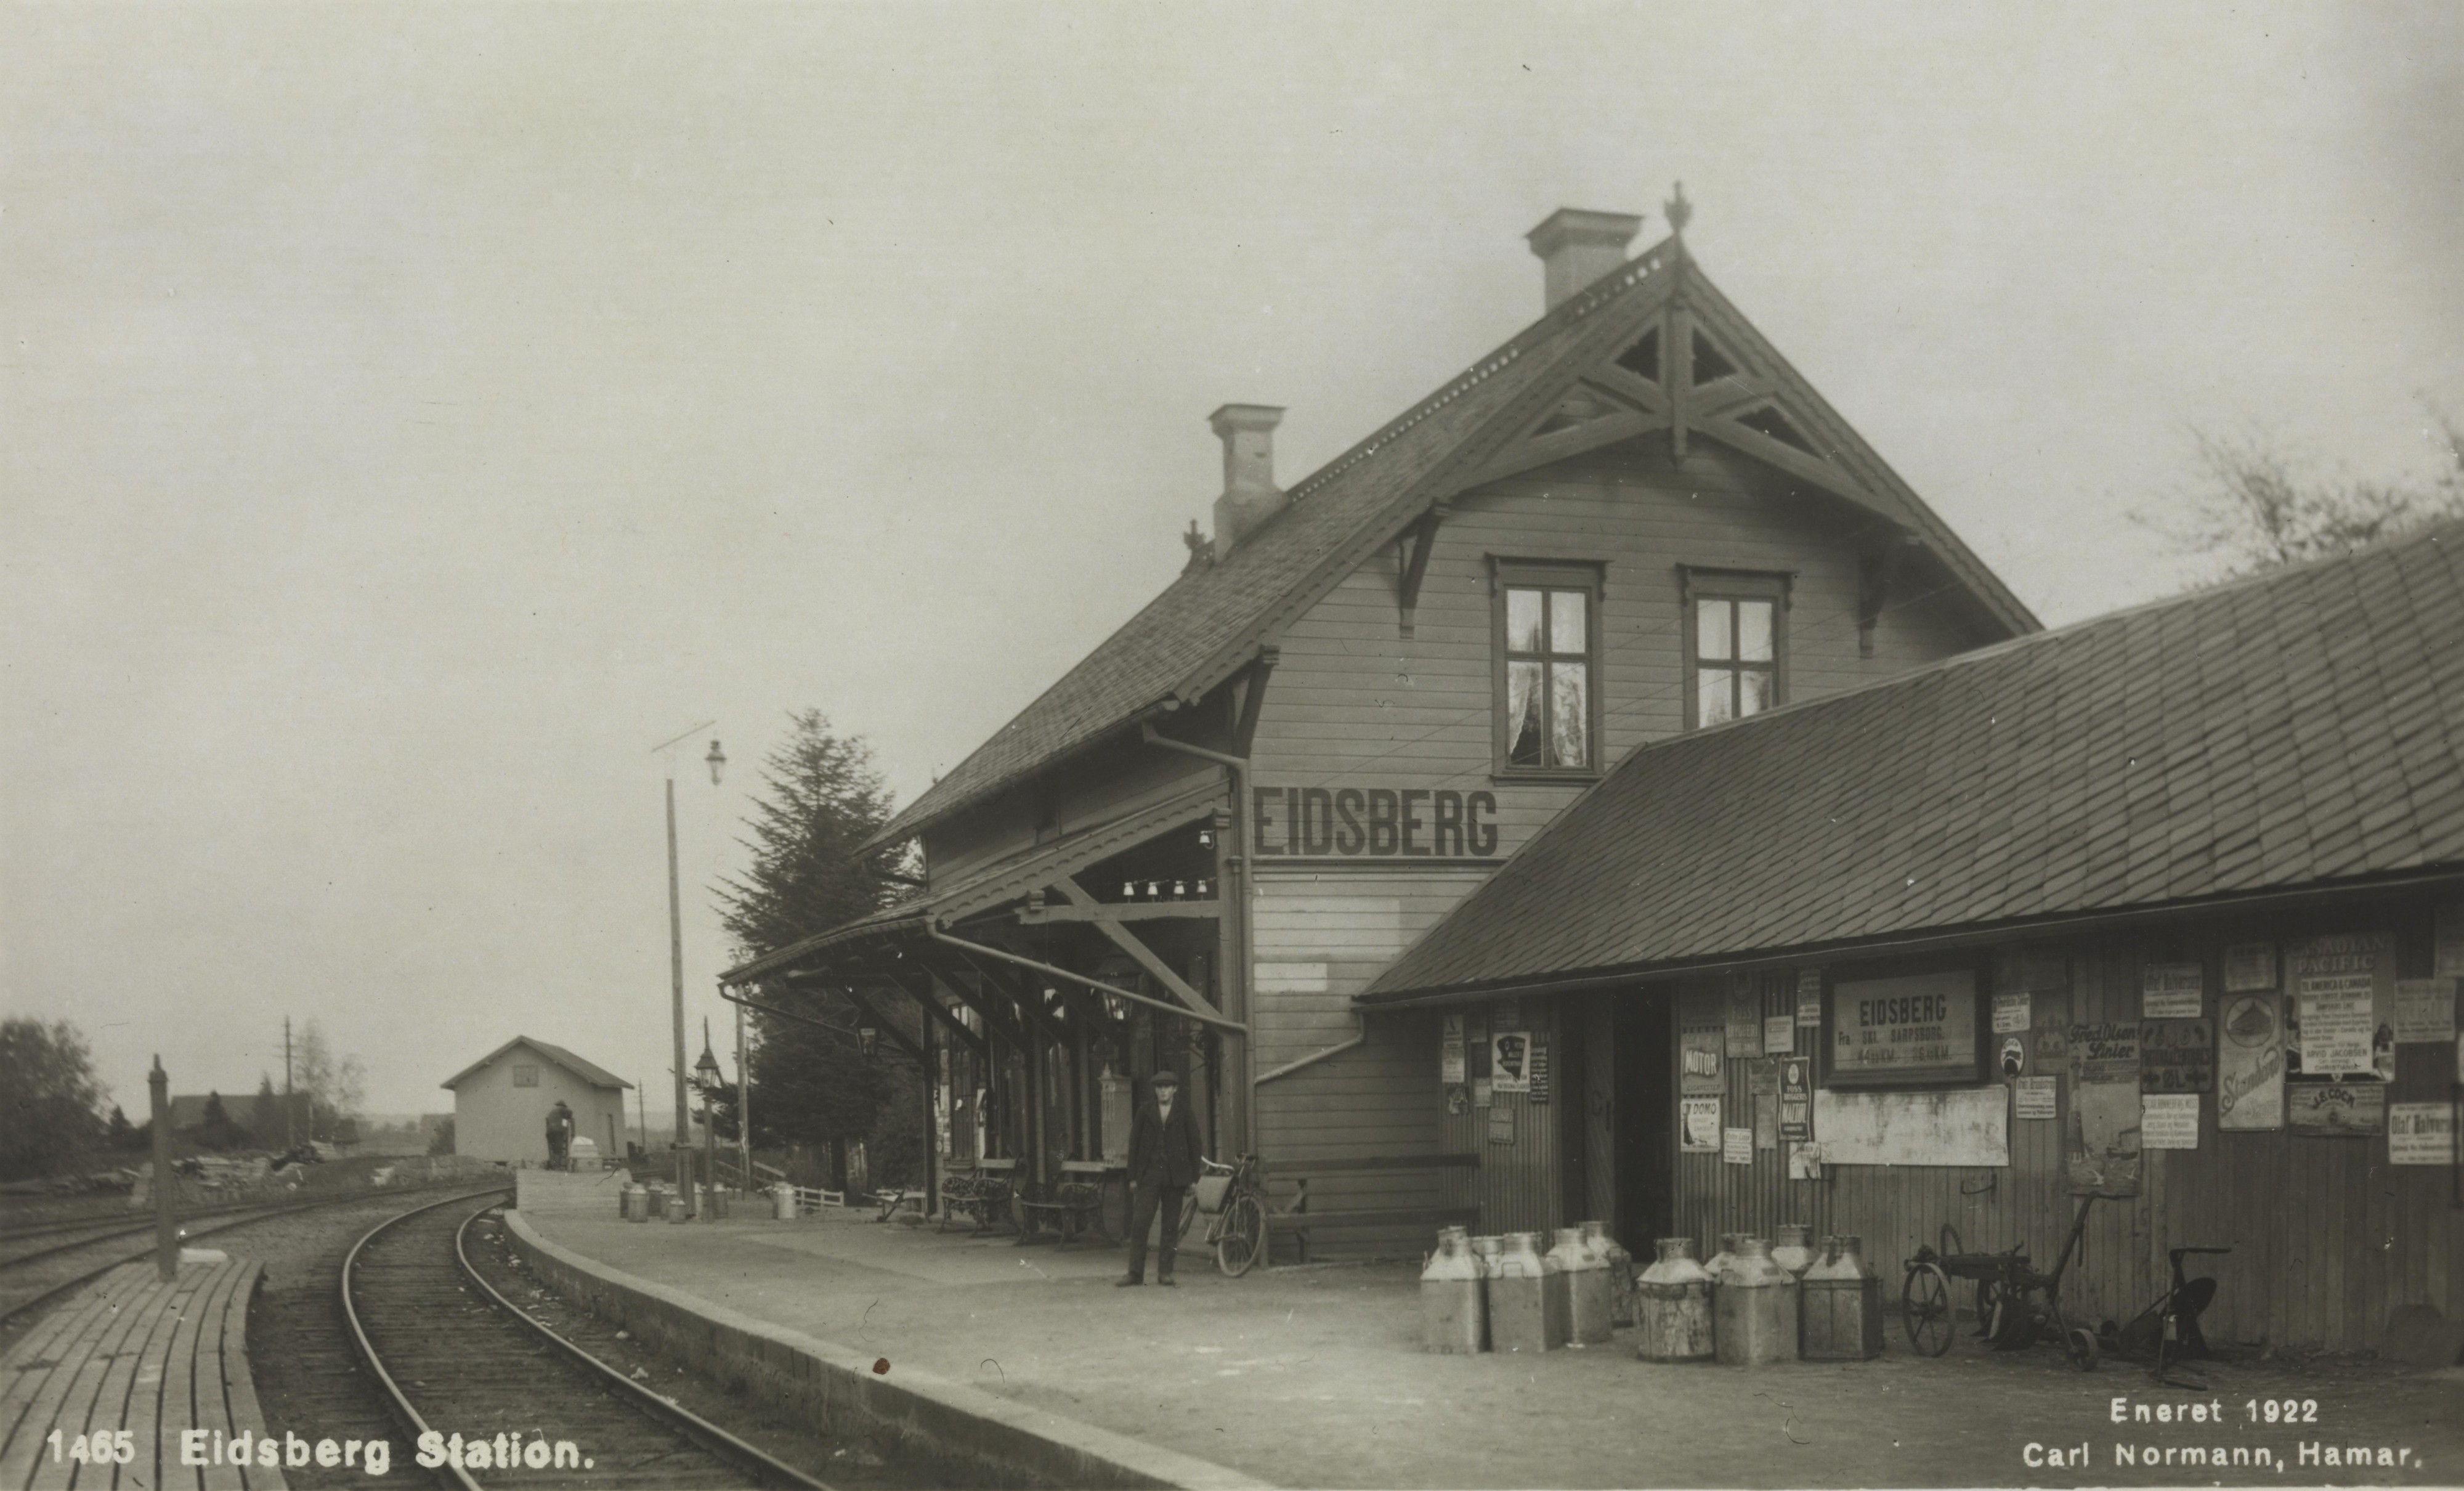 Eidsberg stasjon, old BW